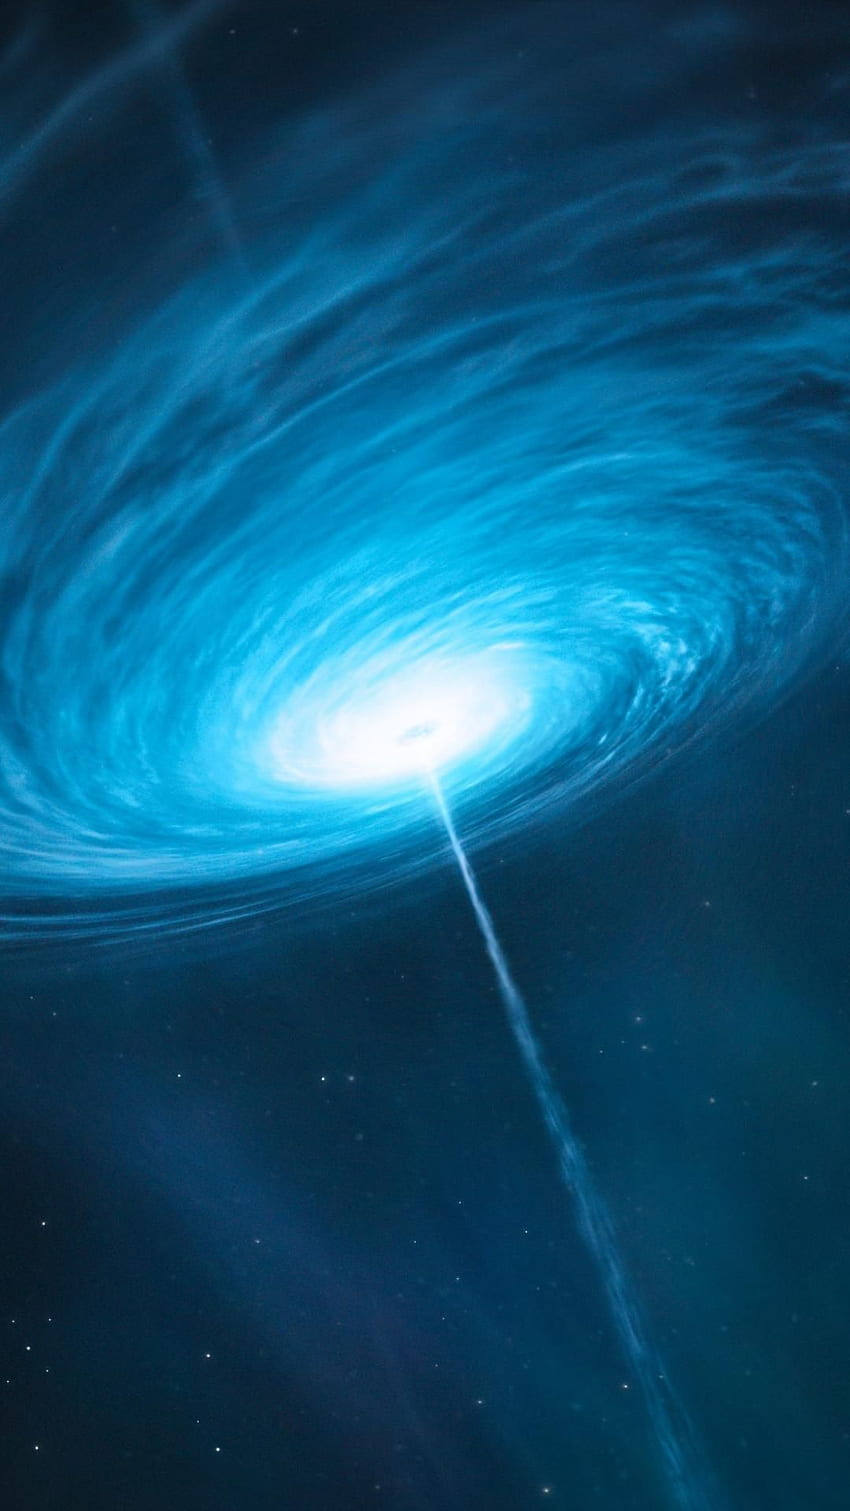 Outer space black hole quasar HD phone wallpaper